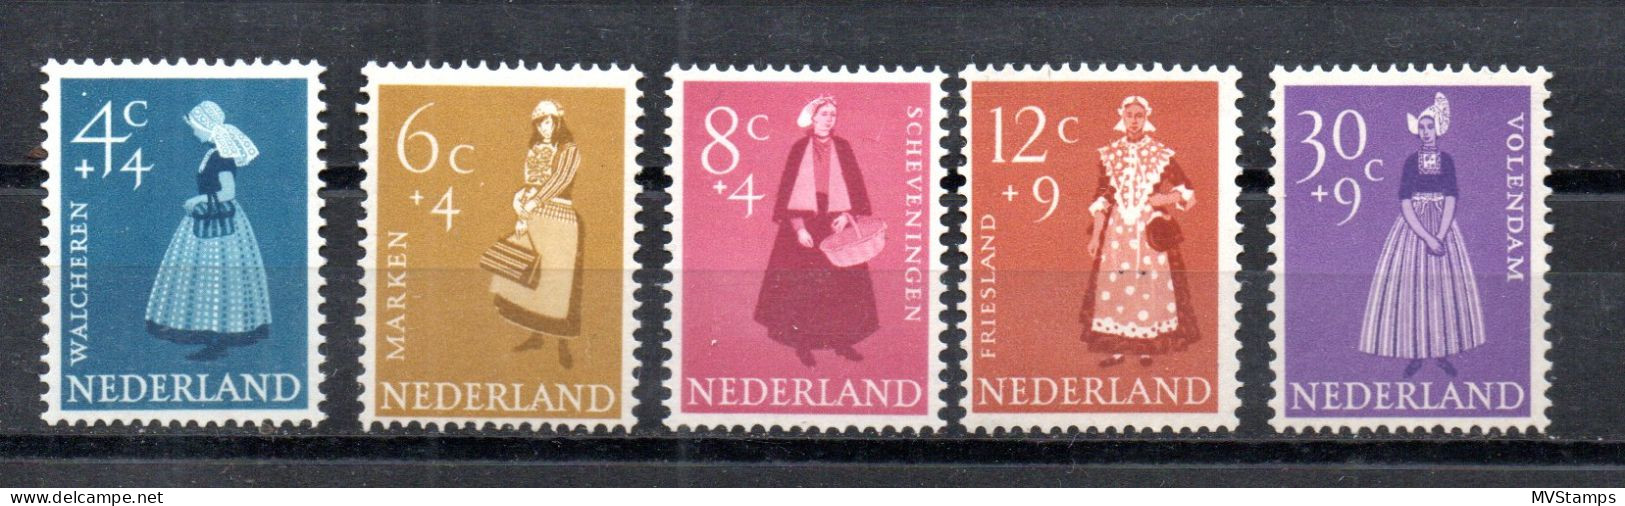 Netherlands 1958 Set Costumes/Trachten Stamps (Michel 712/16) MNH - Ungebraucht